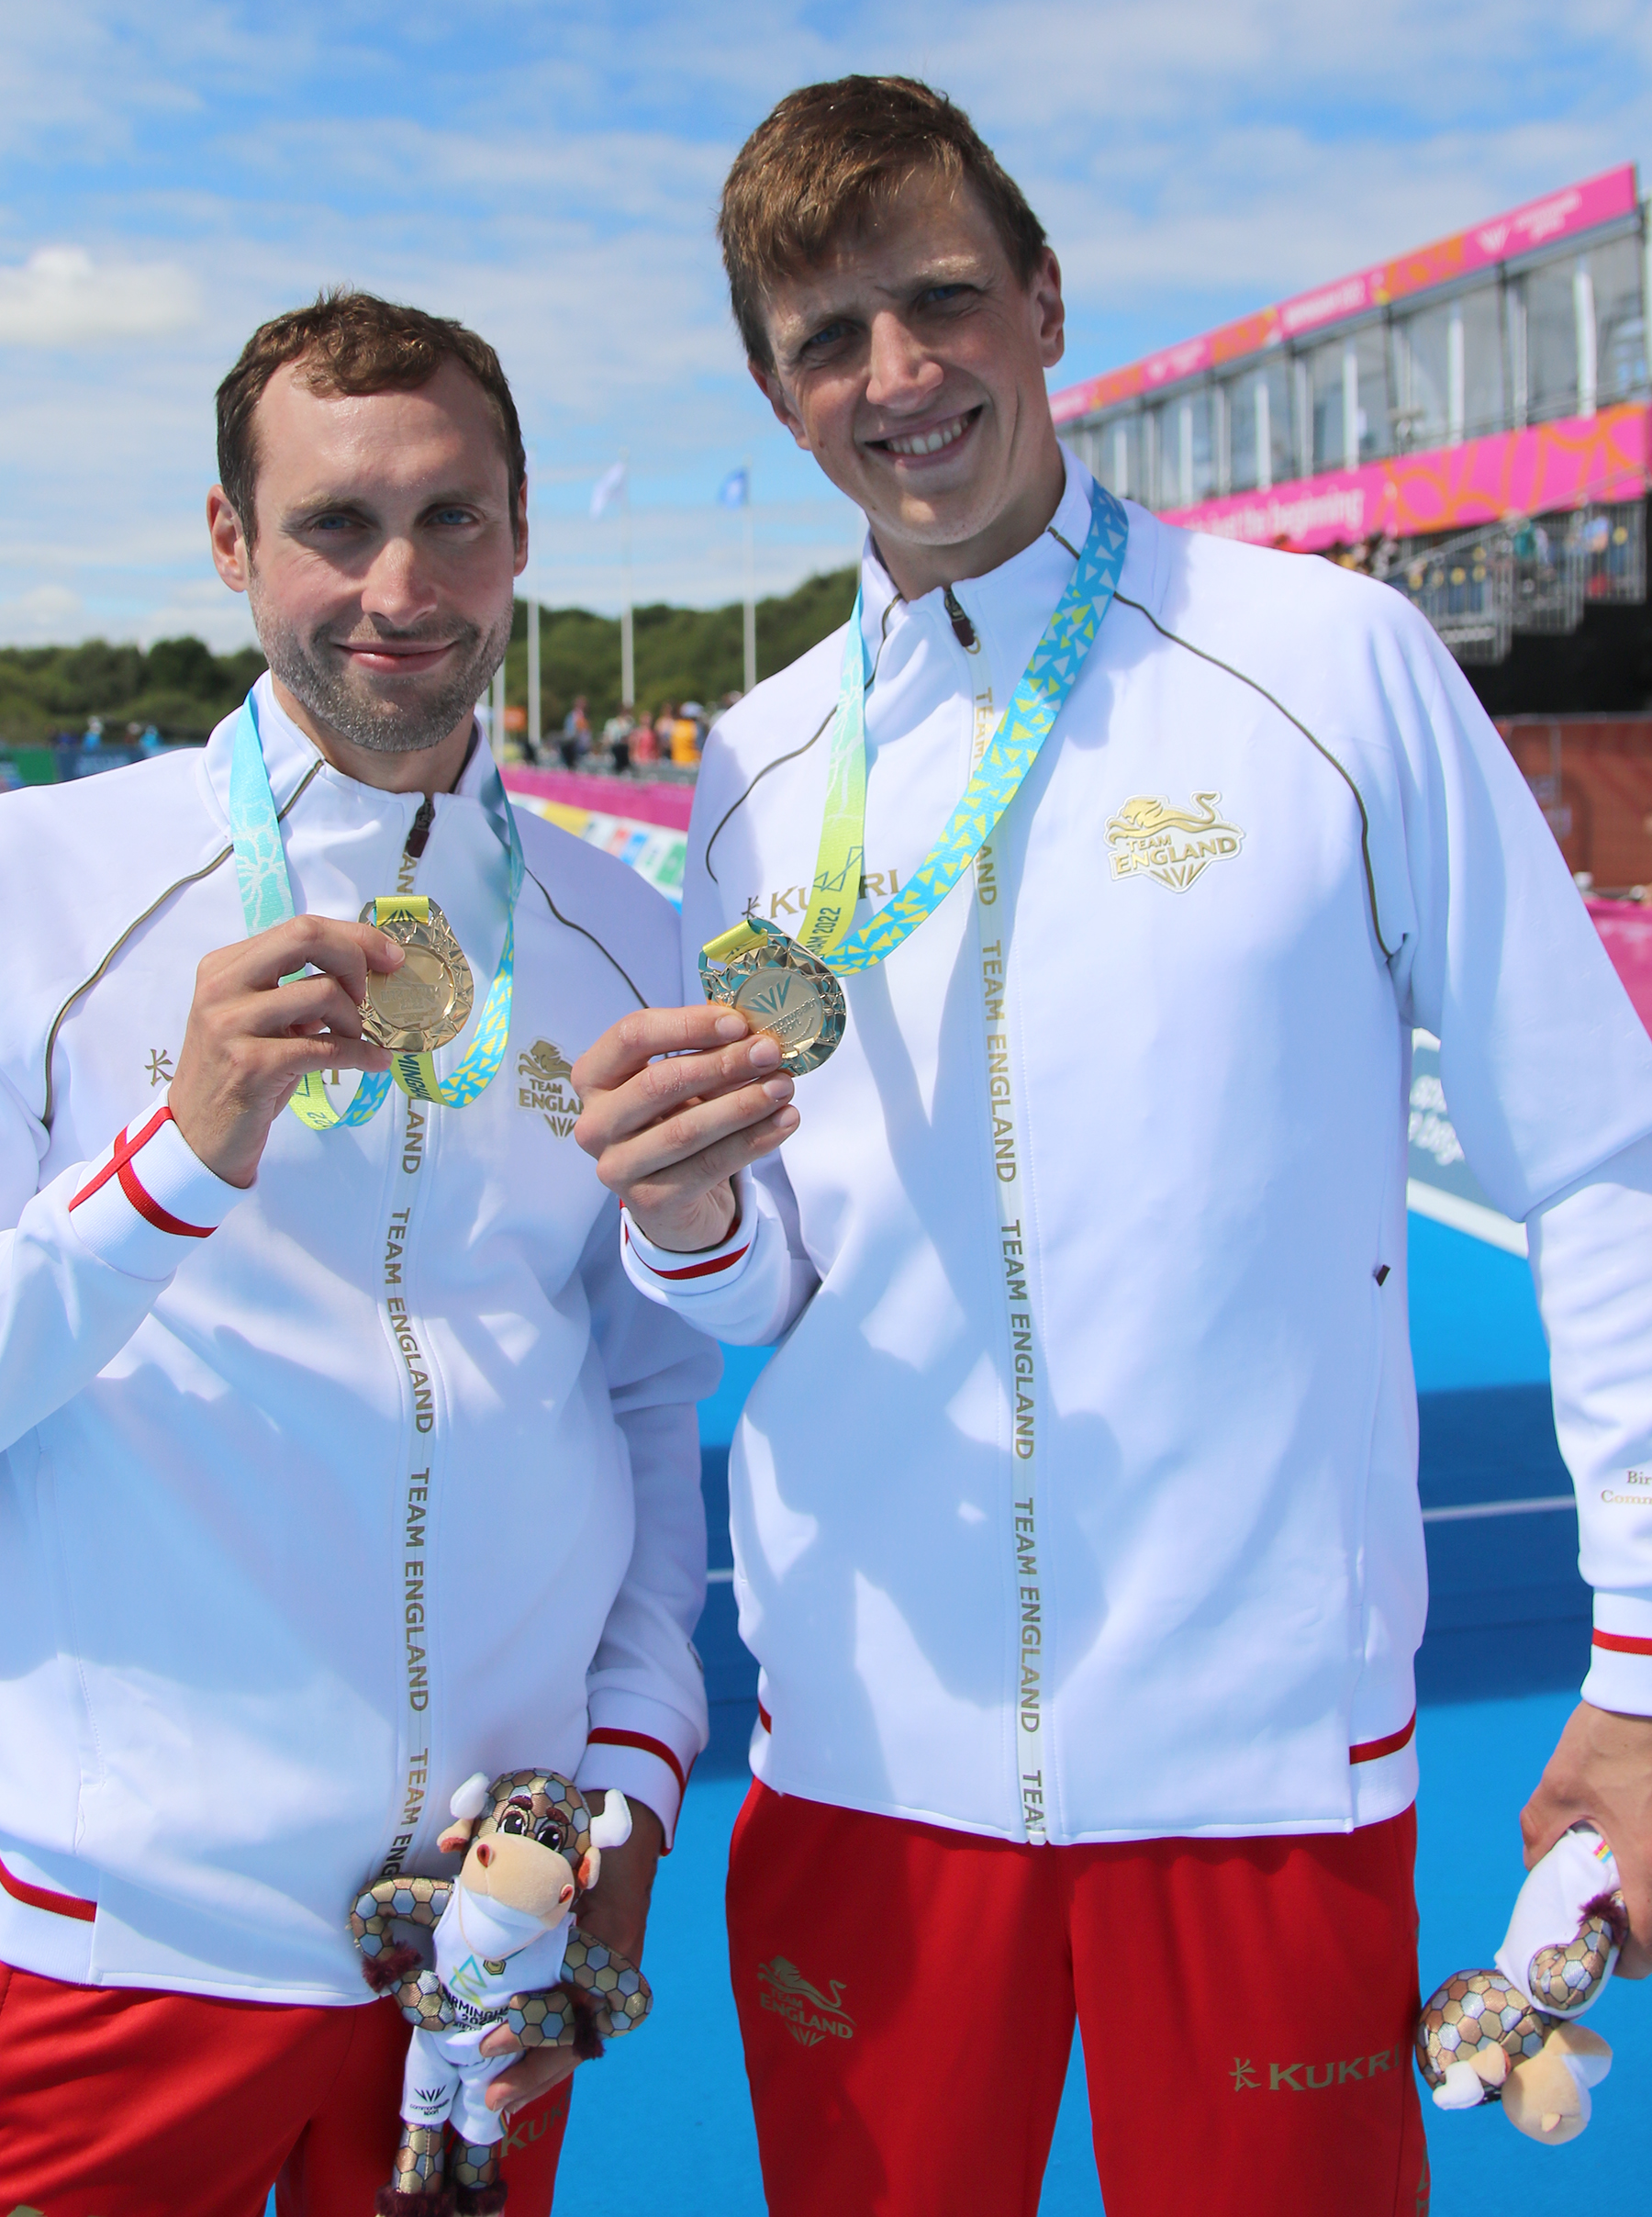 Image shows sportsmen holding gold medals.